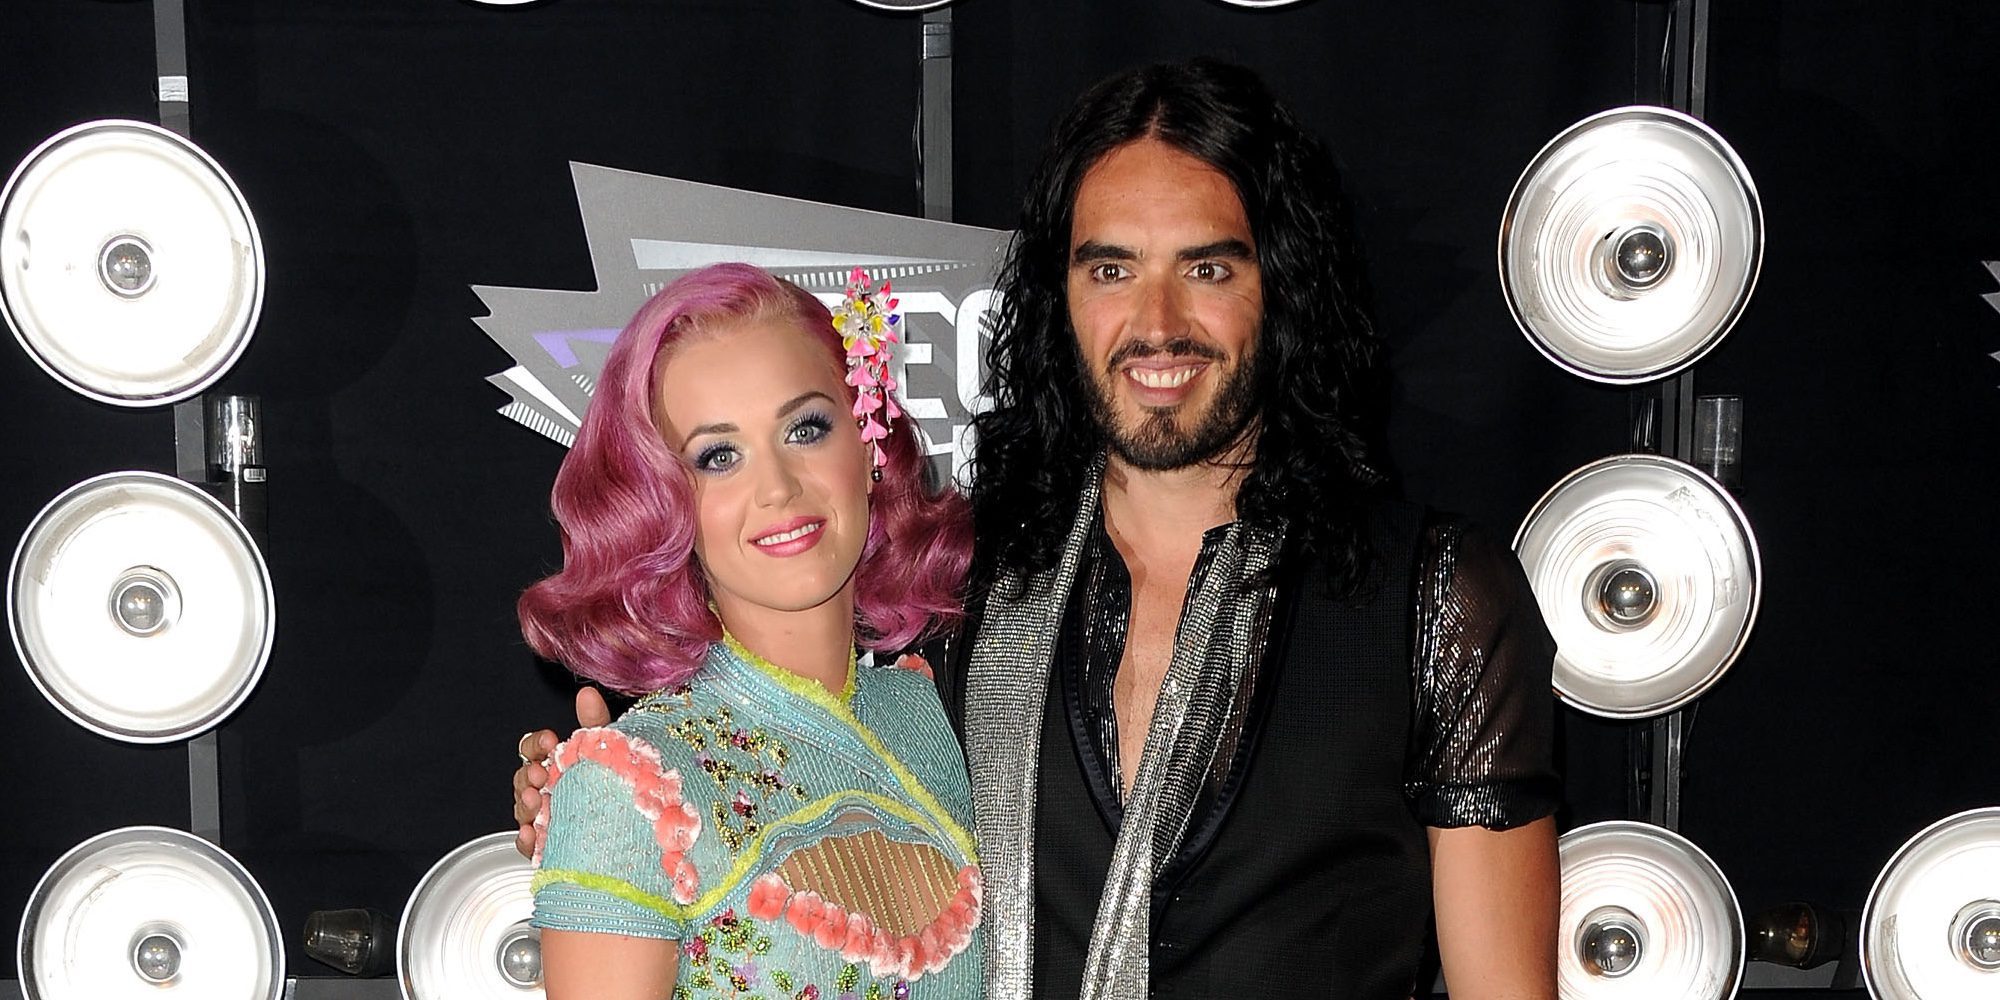 Russel Brand quiere retomar el contacto con Katy Perry: "Estoy abierto a la reconciliación"